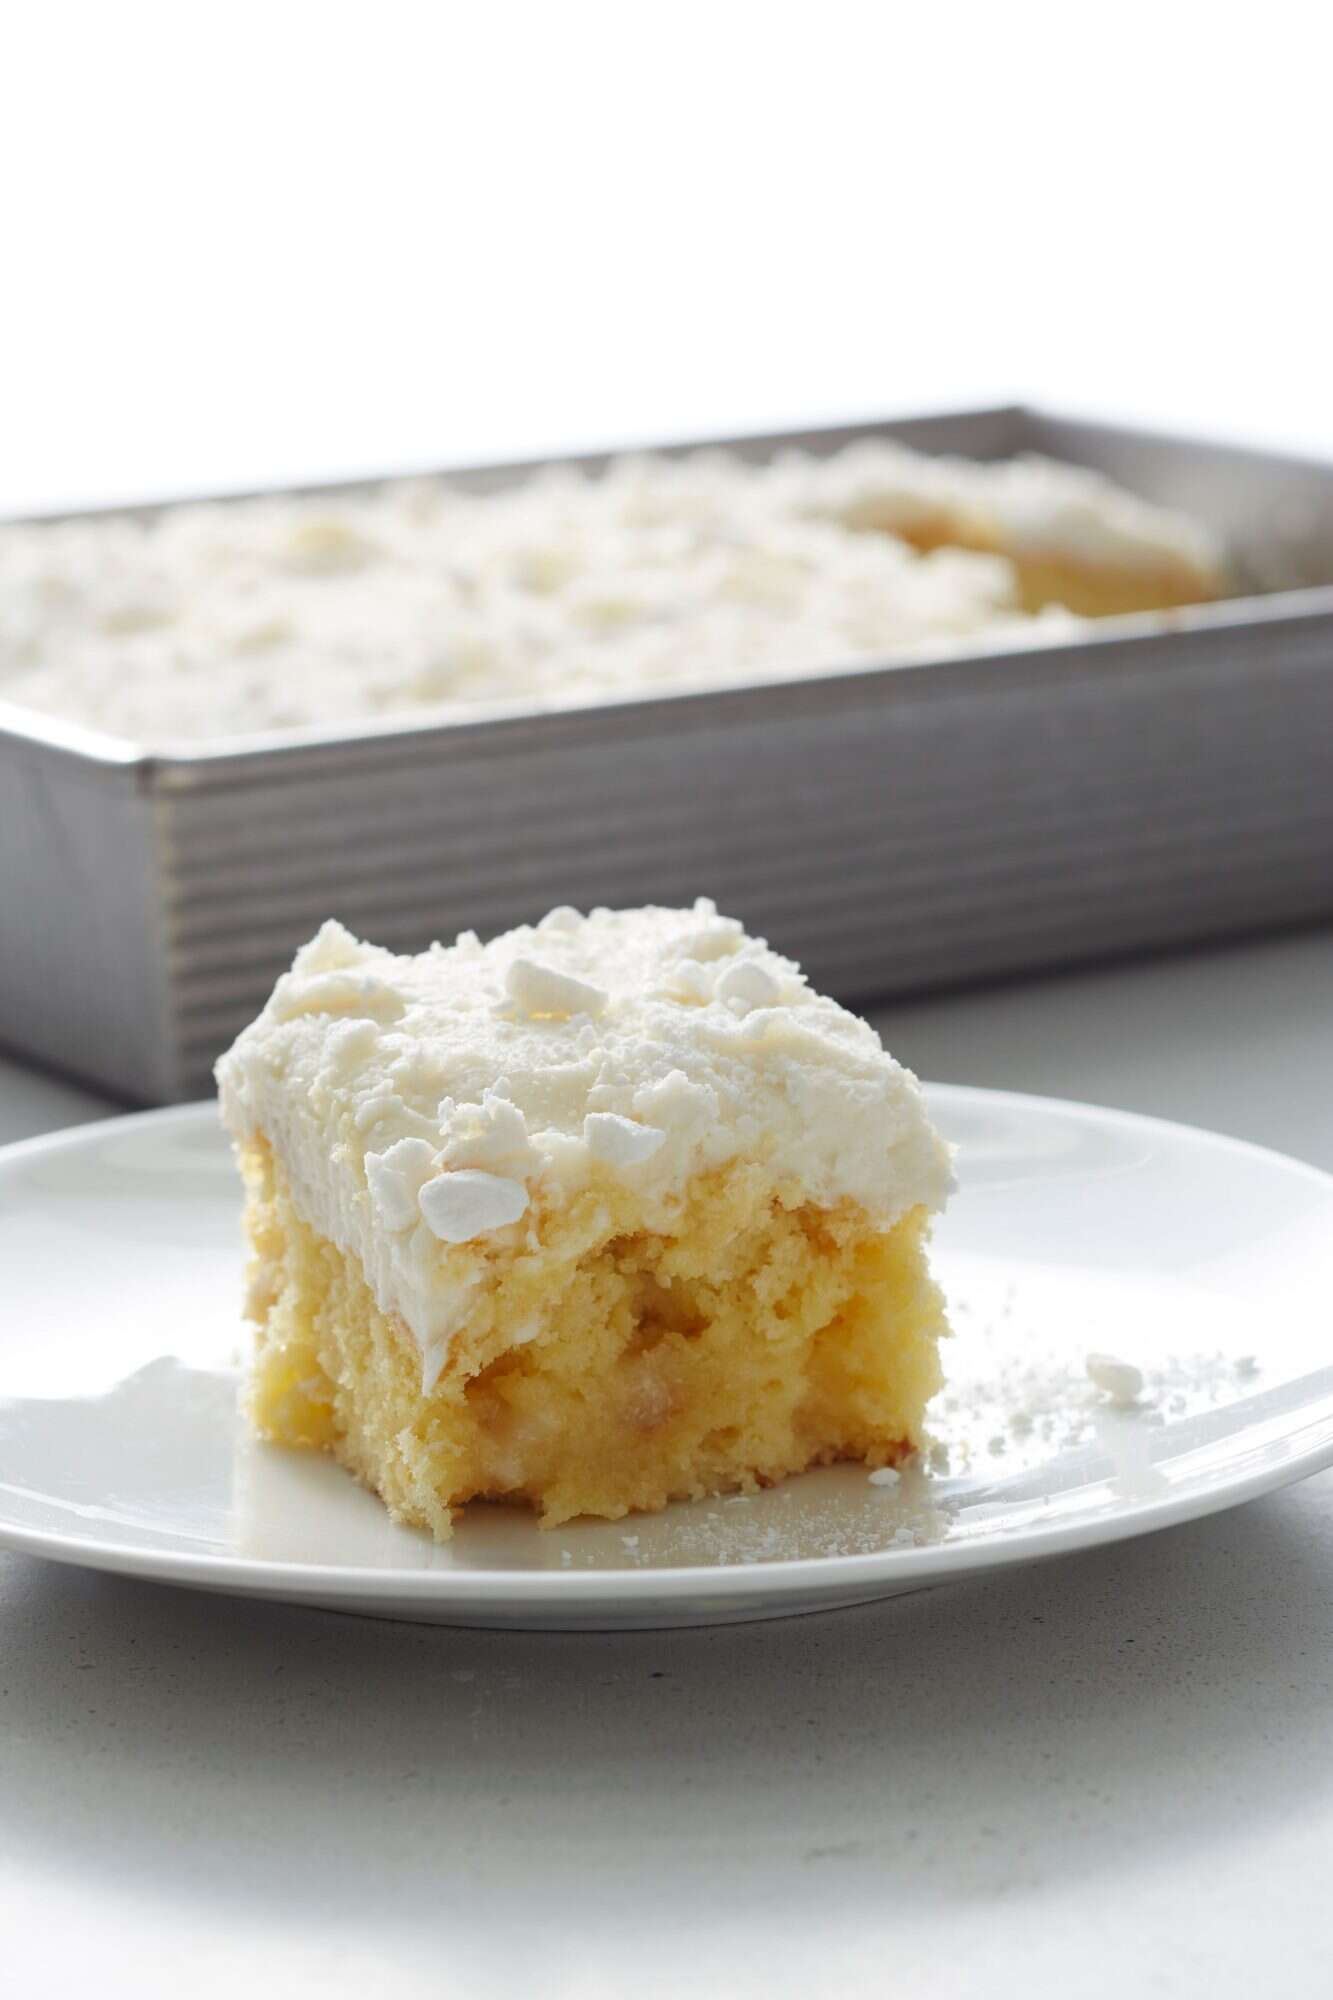 Gnome Cake - Delicious Vanilla Cake Recipe with Buttercream Frosting